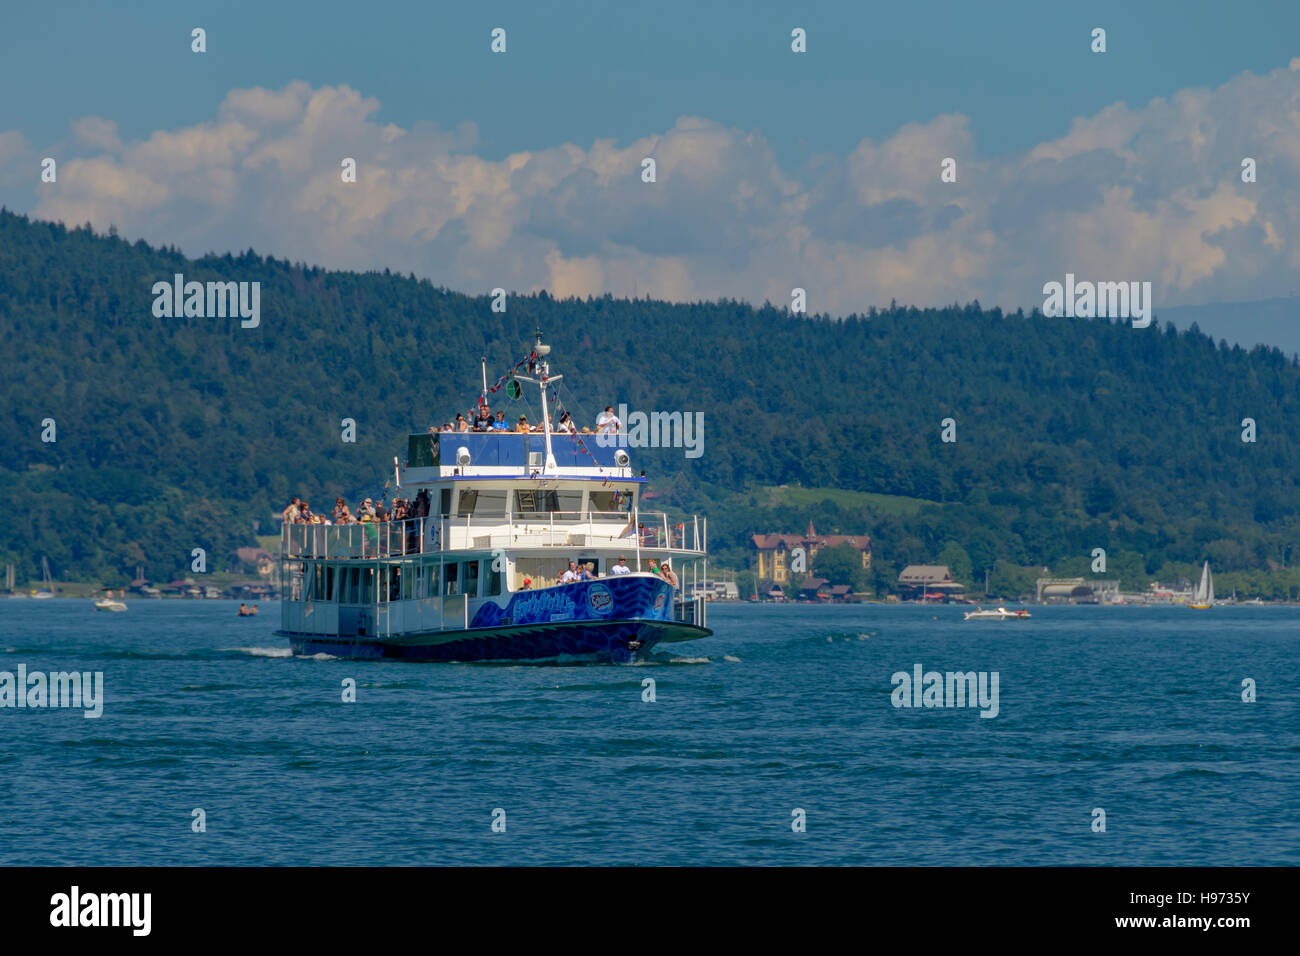 Passenger - tourist ship on lake Worthersee, Carinthia, Austria Stock Photo